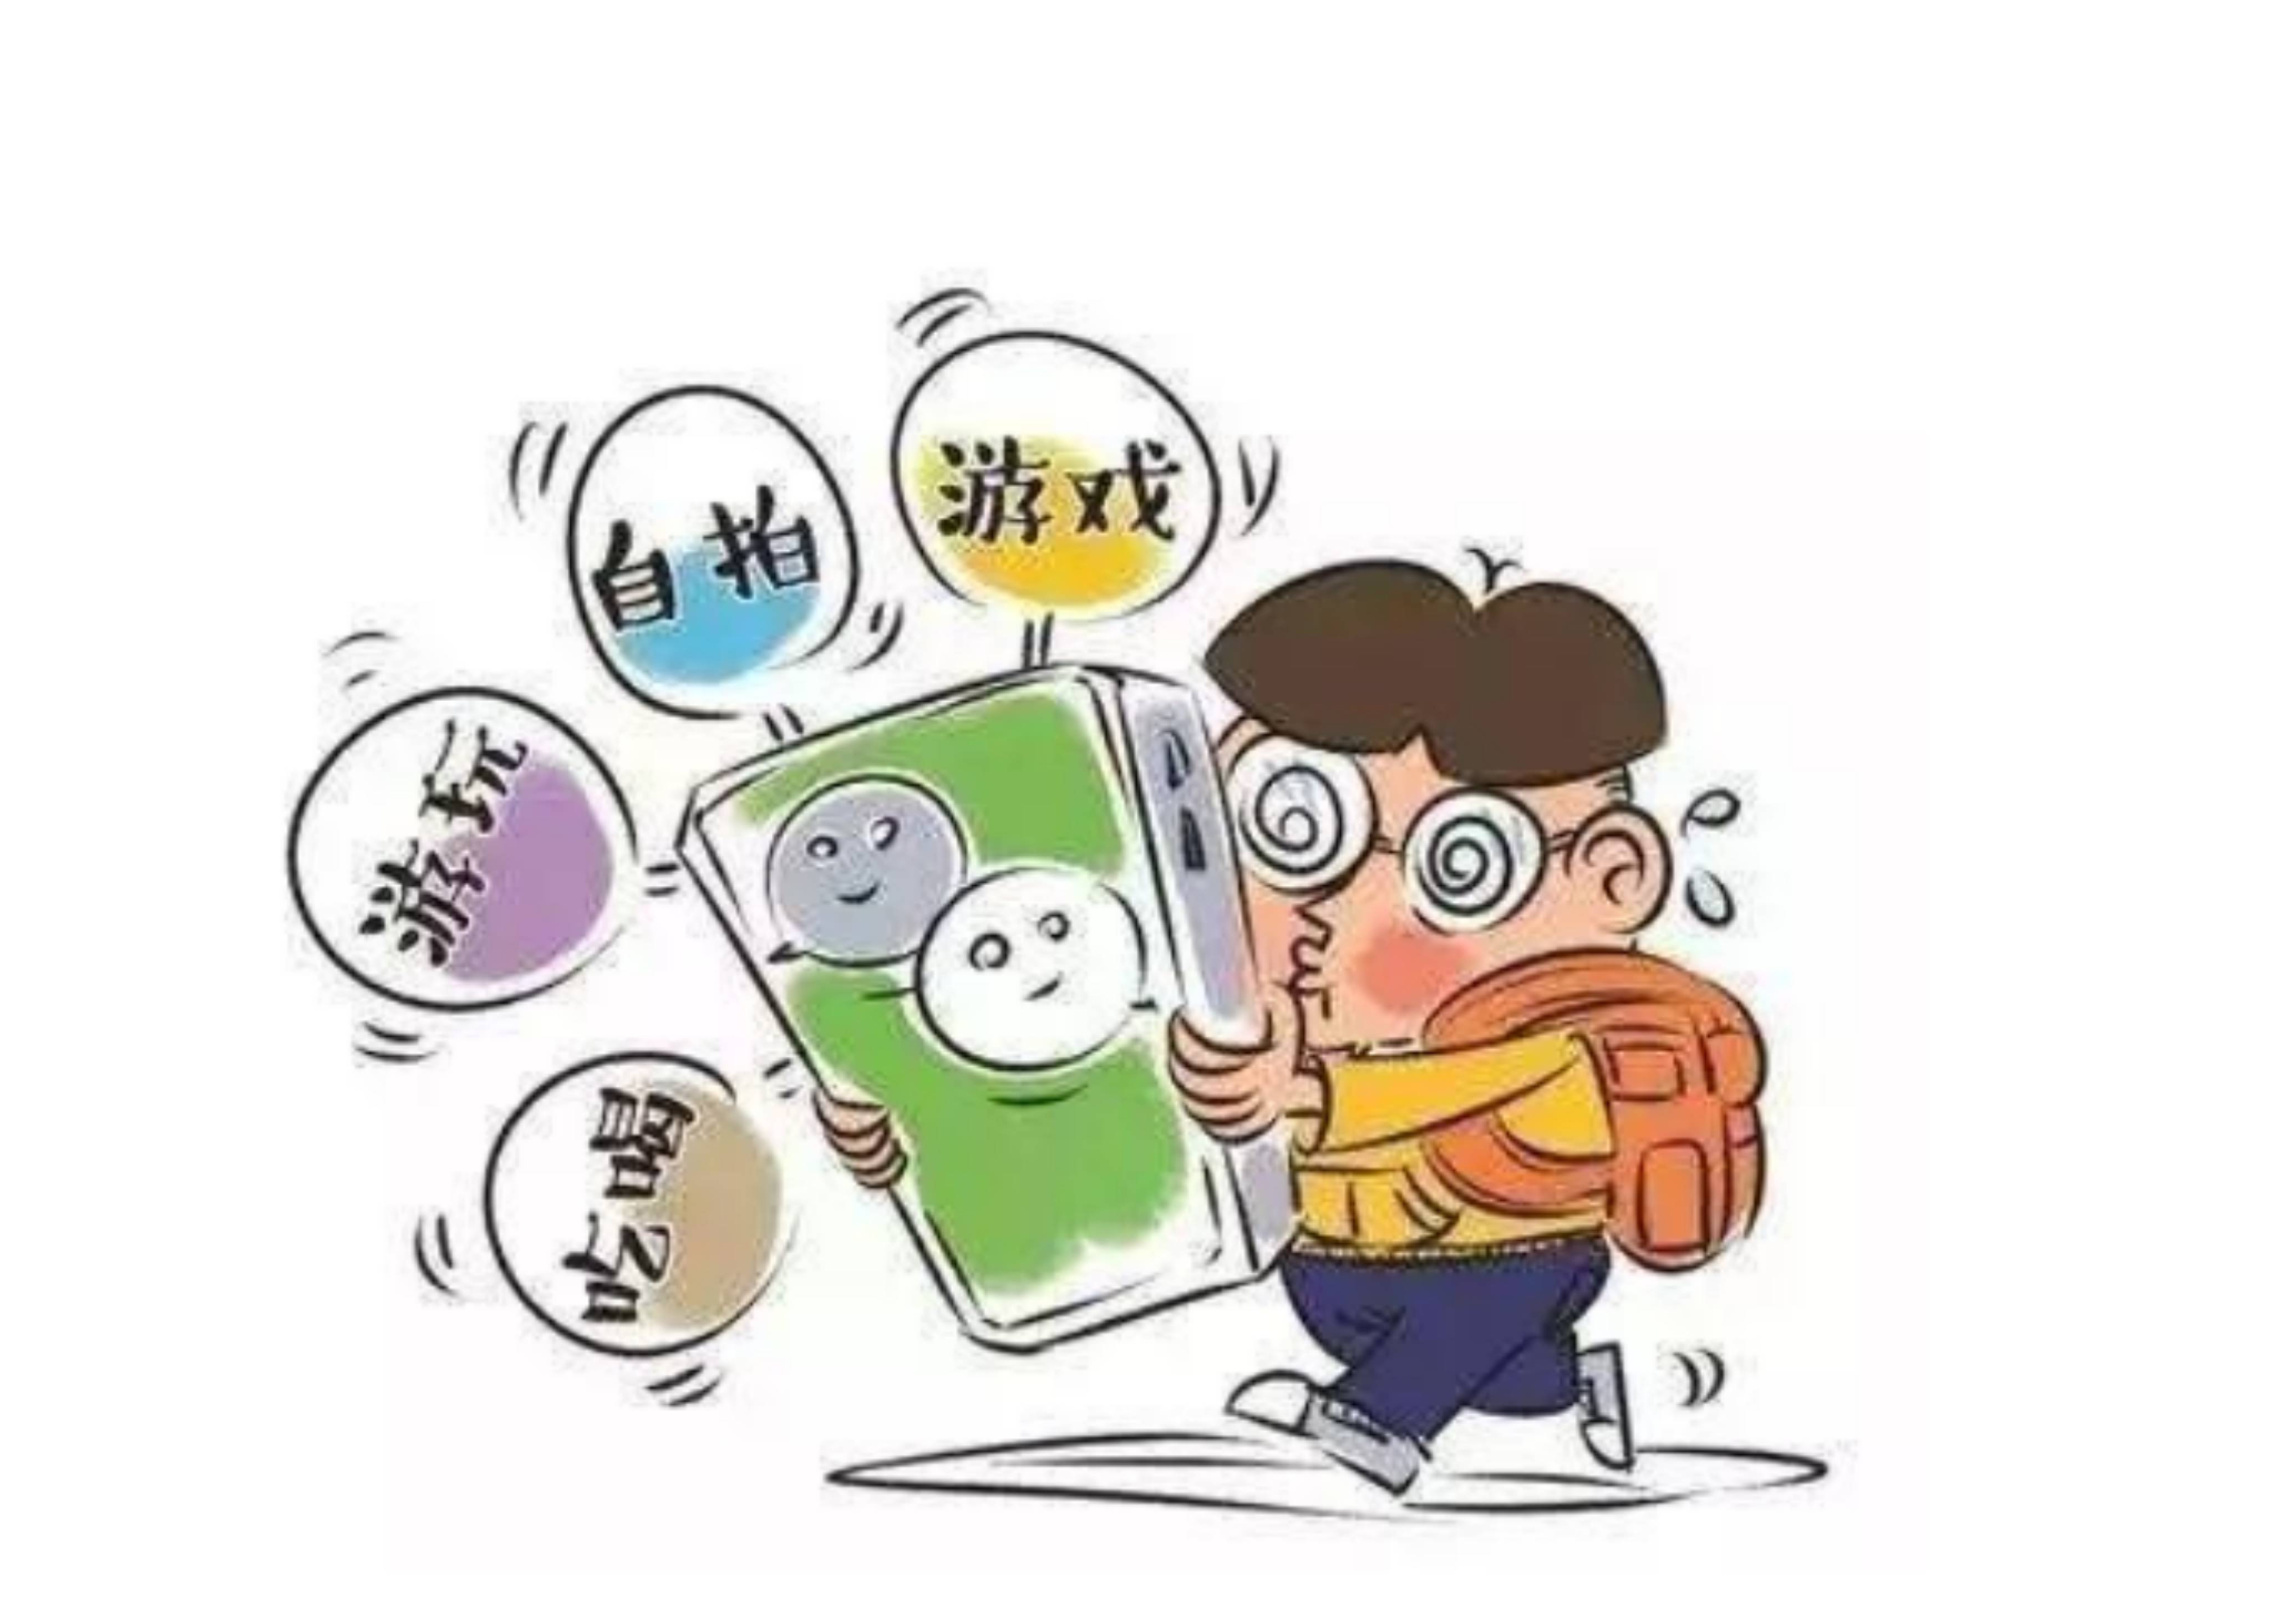 广州天童美语:如何避免沉迷玩手机